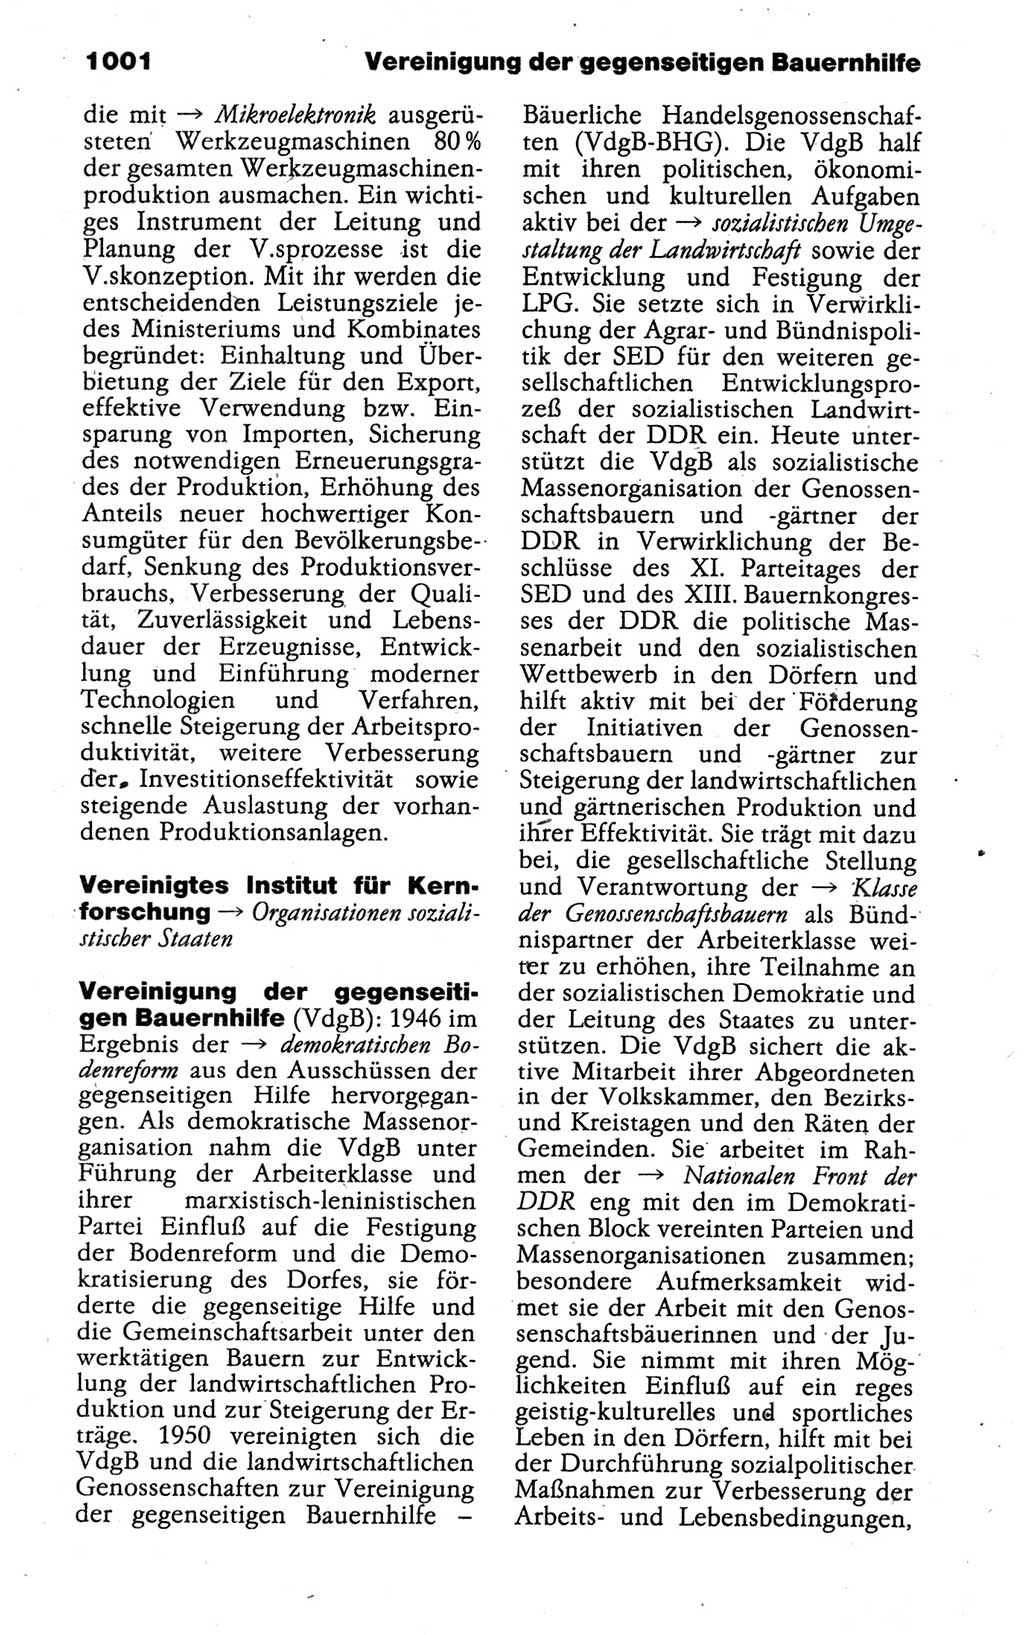 Kleines politisches Wörterbuch [Deutsche Demokratische Republik (DDR)] 1988, Seite 1001 (Kl. pol. Wb. DDR 1988, S. 1001)